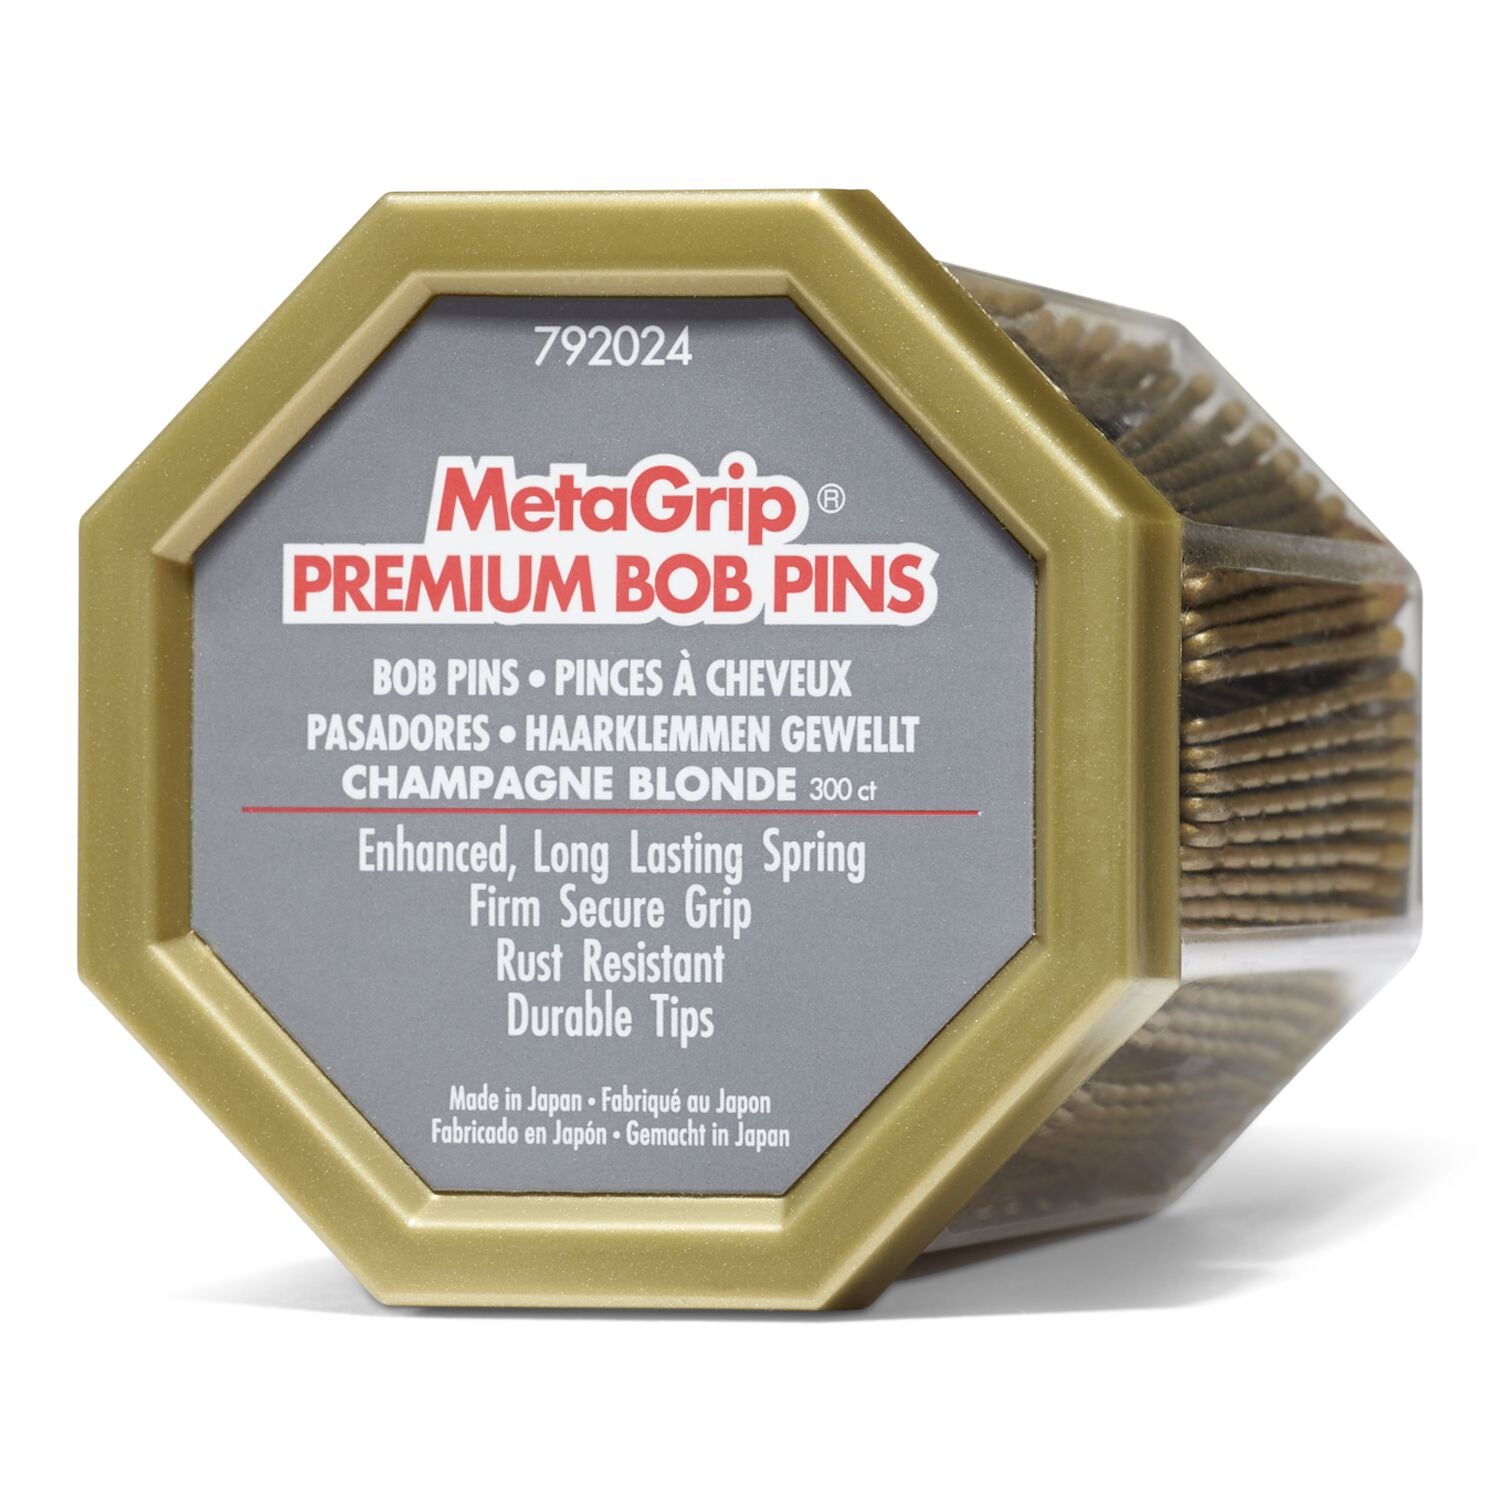 MetaGrip Blonde Premium Bobby Pins